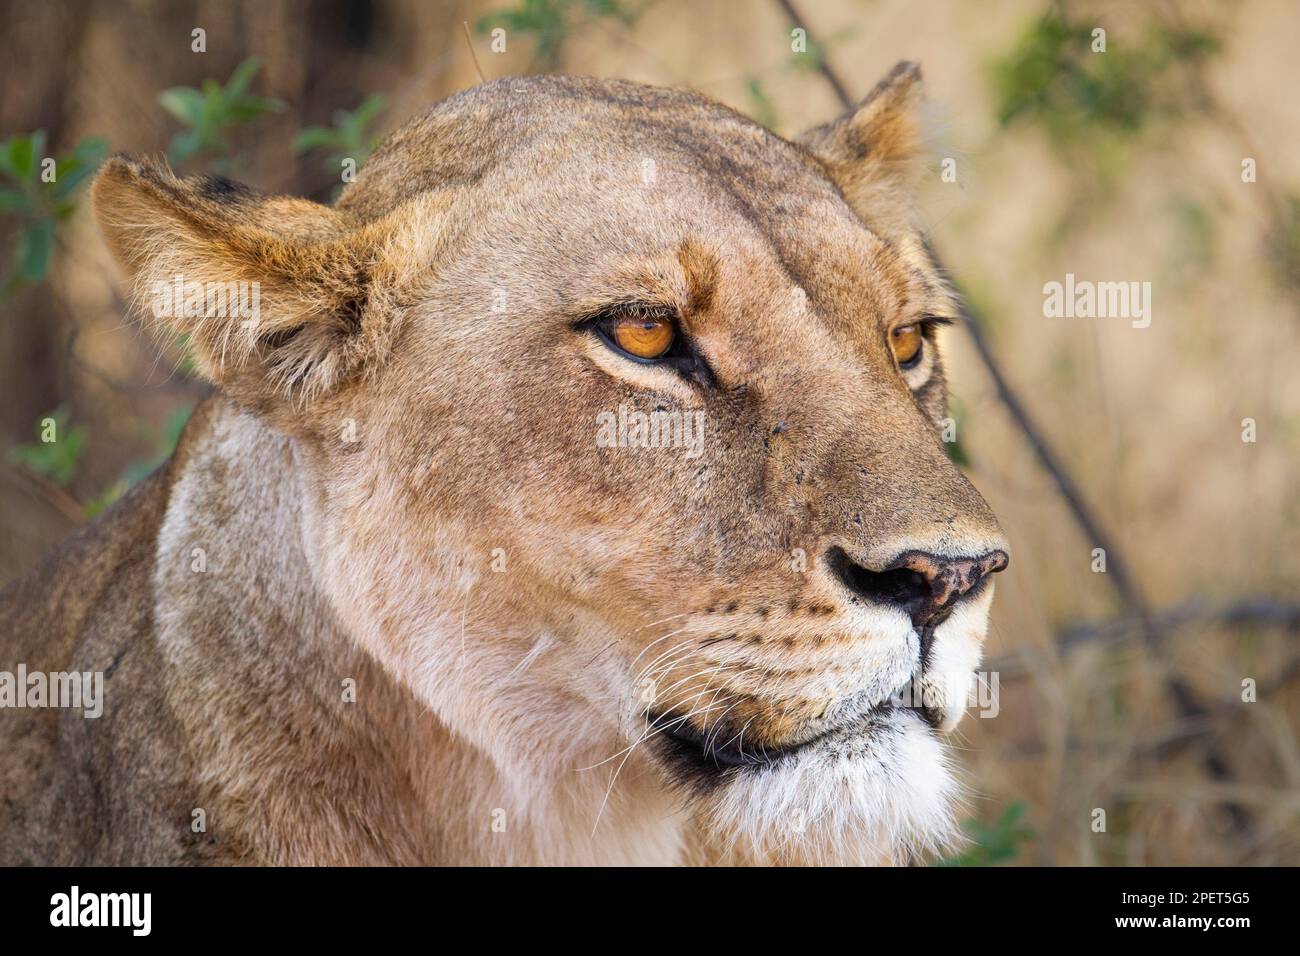 Porträt Löwe, Panthera leo, Nahaufnahme von Gesicht und Kopf. Das wilde Tier sieht intensiv aus. Okavango Delta, Botsuana, Afrika Stockfoto